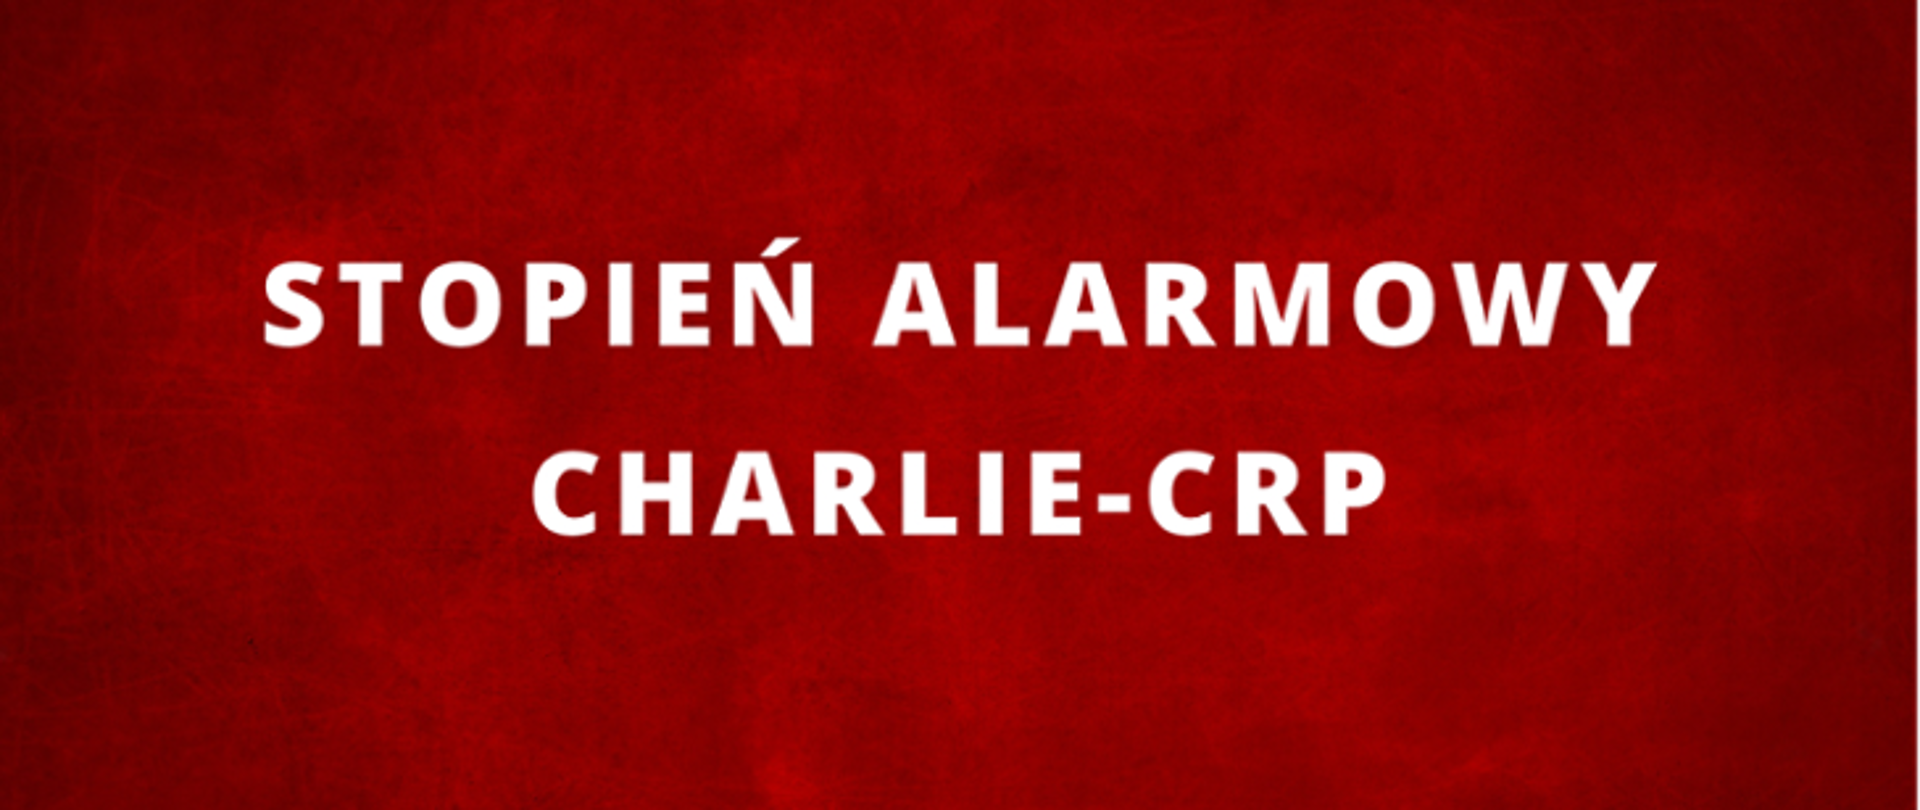 Baner z napisem stopień alarmowy ALFA CRP - białe litery na czerwonym tle